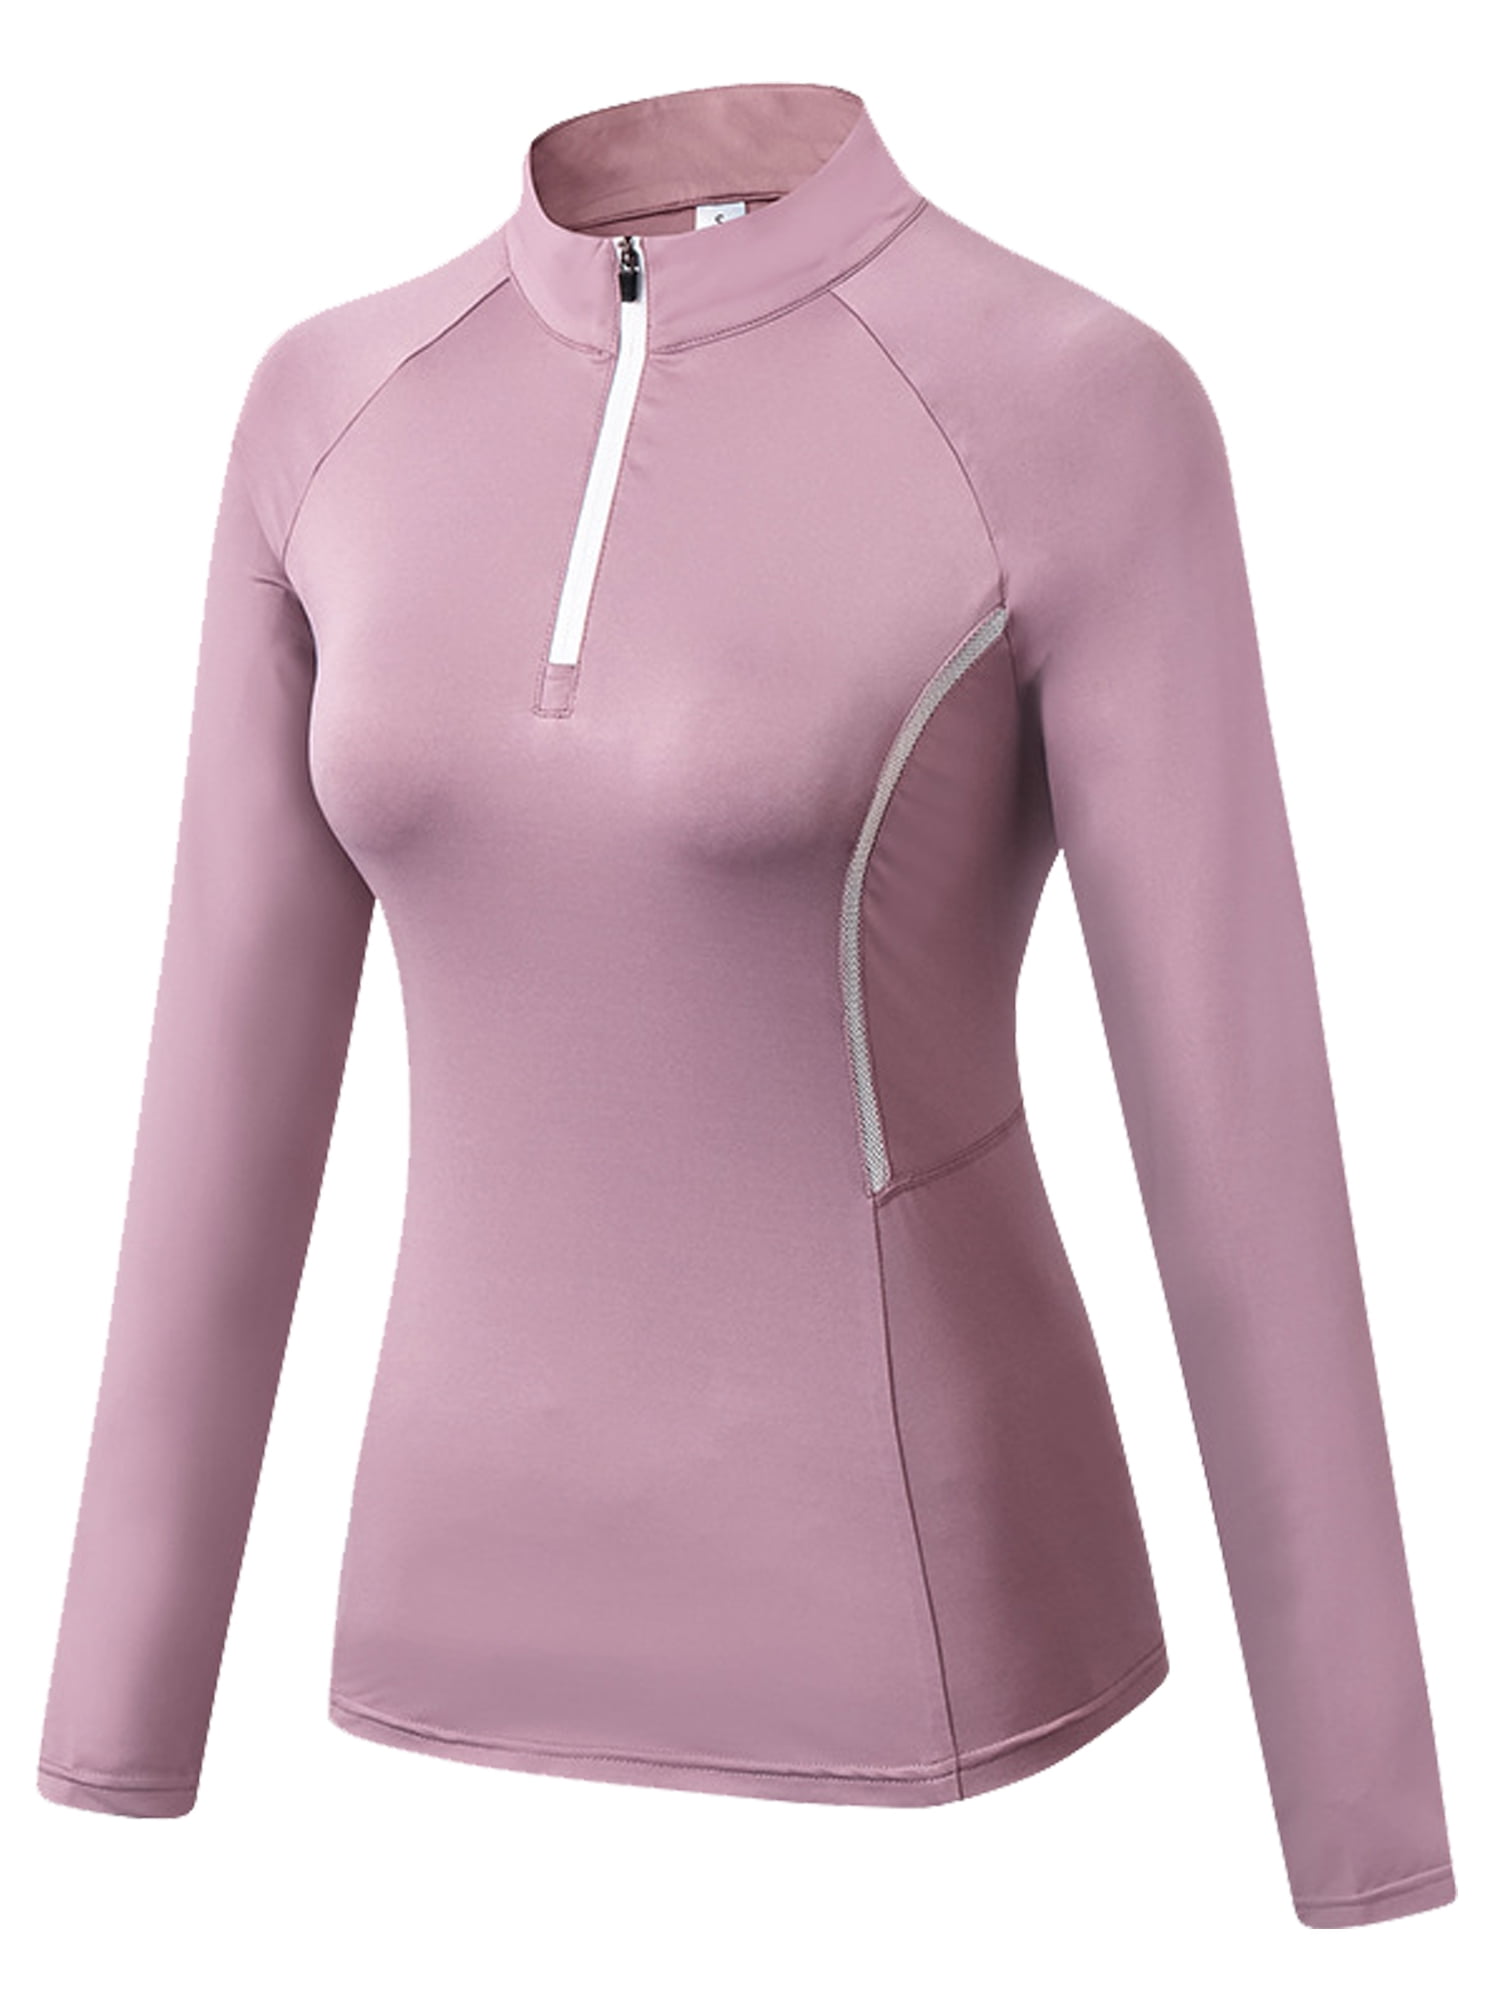 Womens Quarter Zip Long Sleeve Workout Tops 1/4 Zip Running Pullover